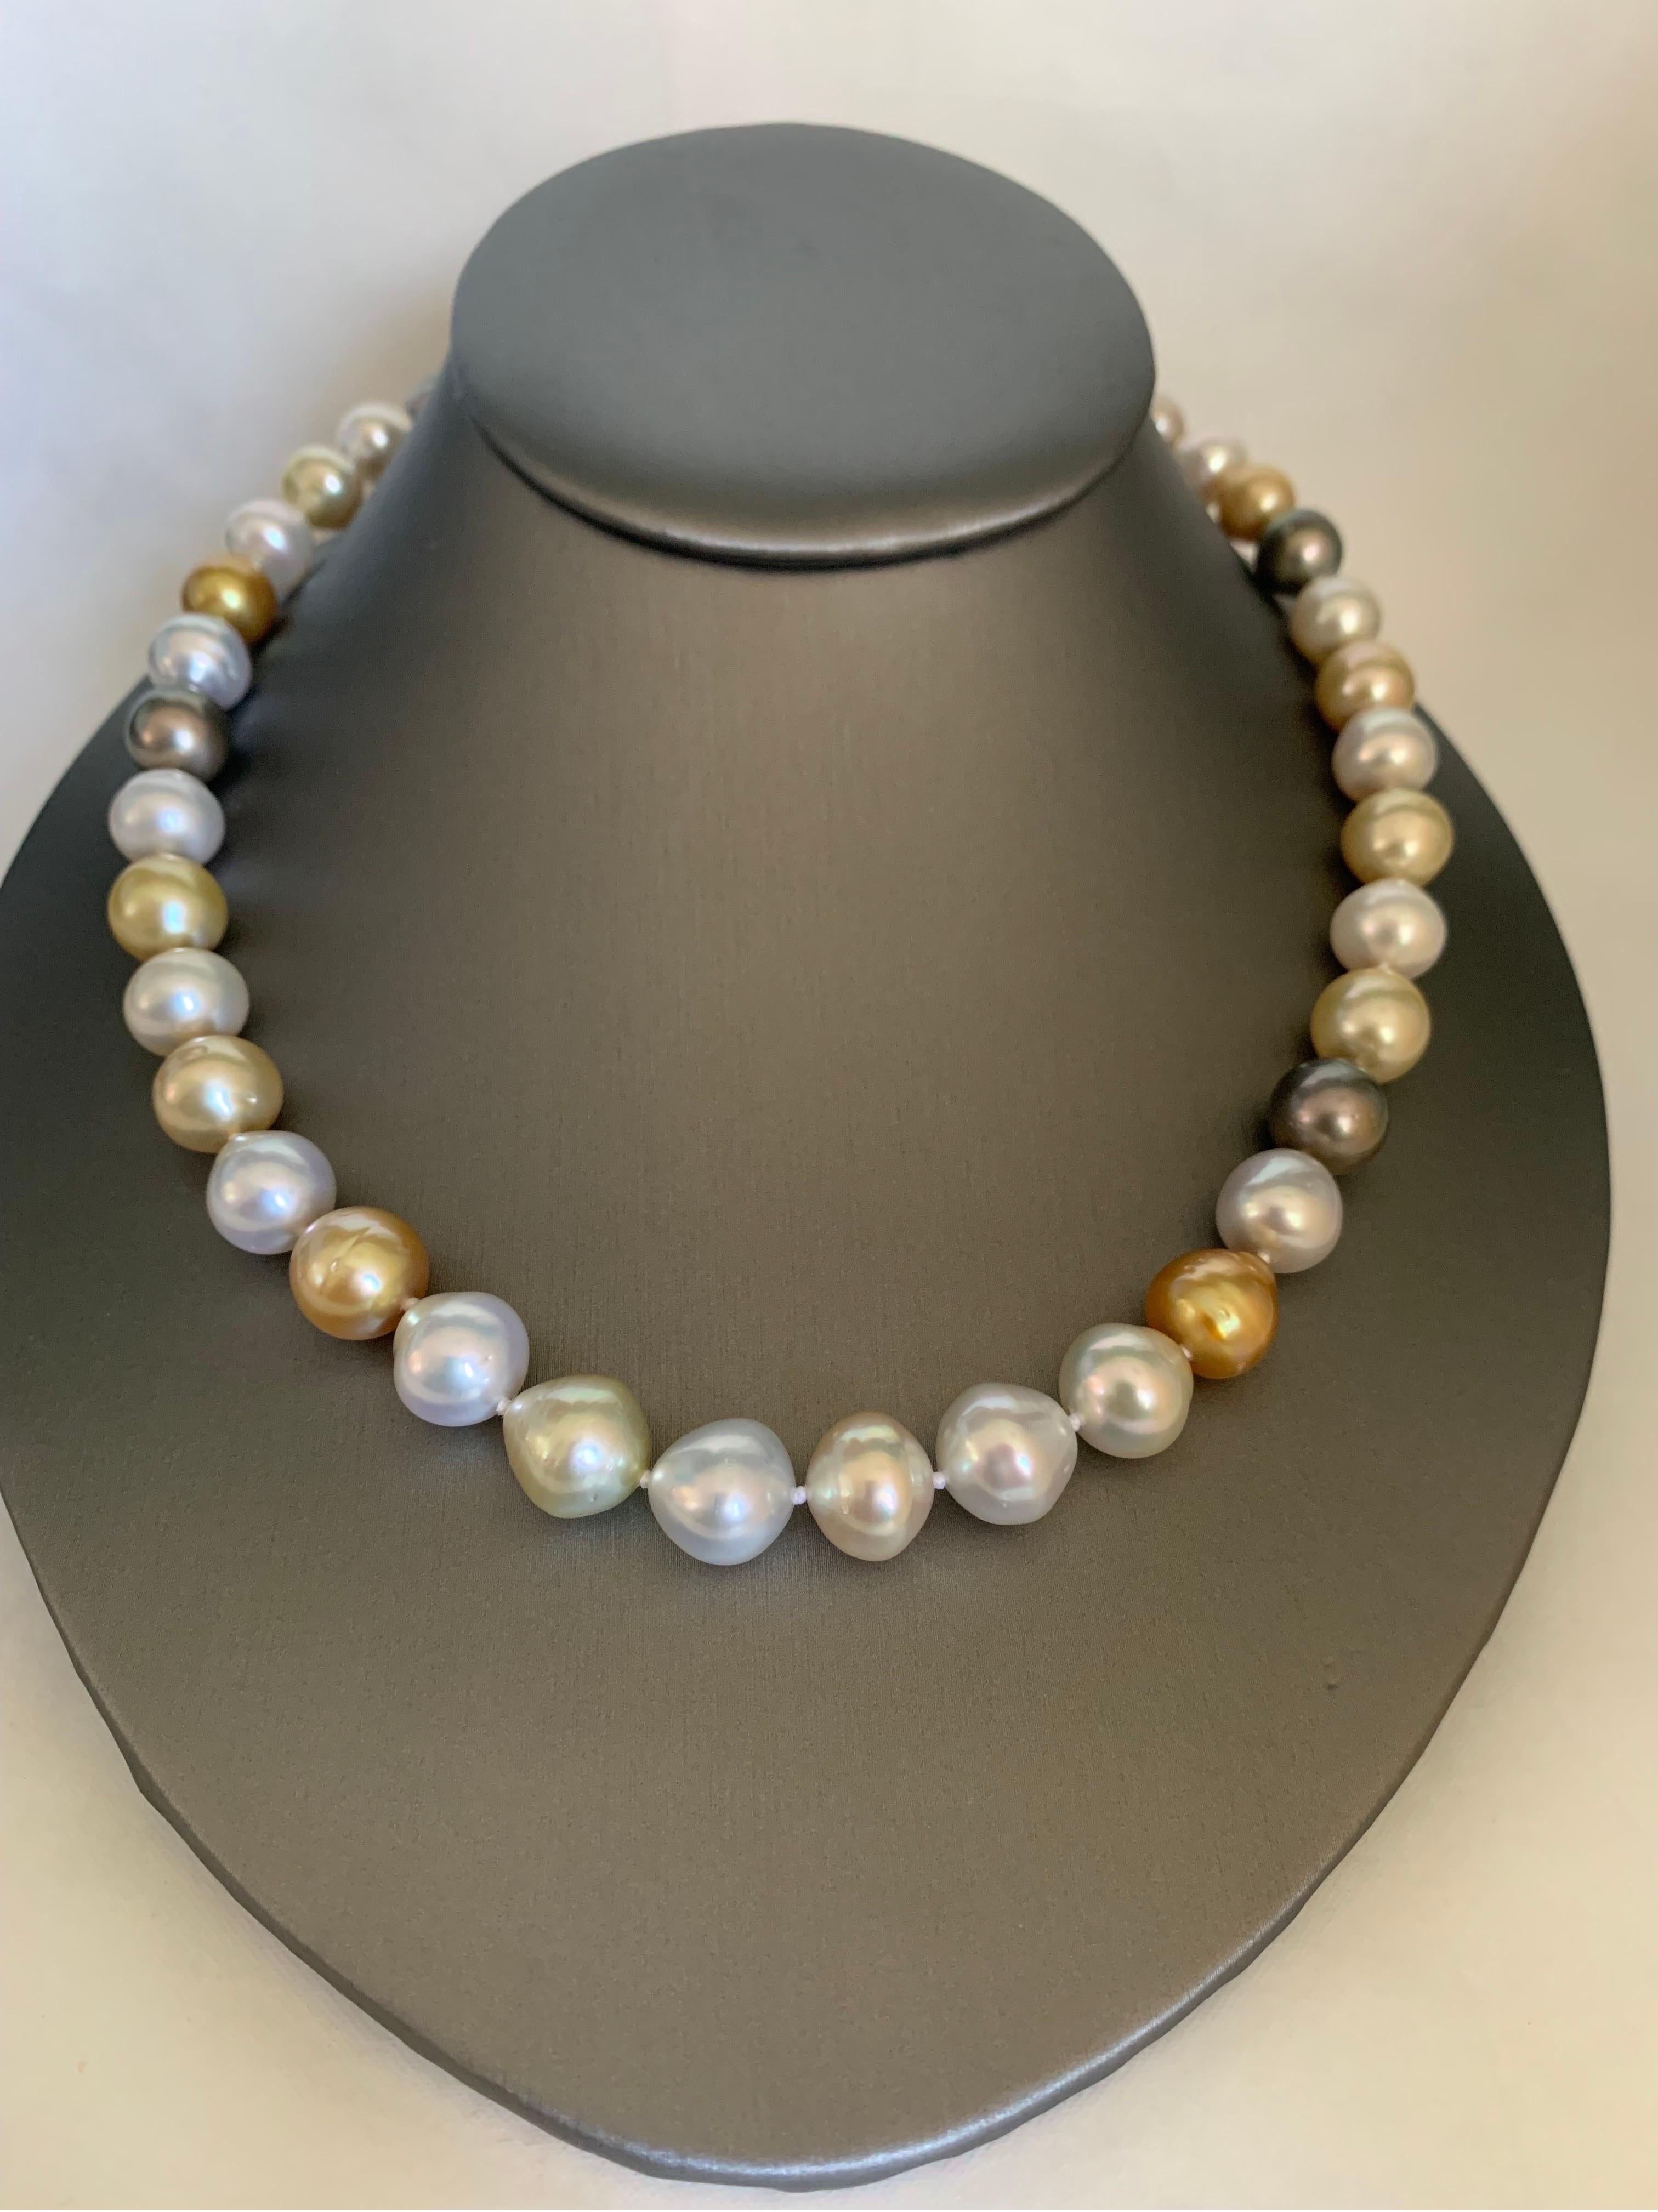 Werten Sie Ihren Look mit einer zeitlosen, abgestuften Perlenkette auf. Diese 18-18,5 Zoll lange Strangkette ist vollständig geknotet und von Hand mit passender Seidenkordel aufgefädelt. Die Halskette besteht aus 39 lebendig schimmernden,